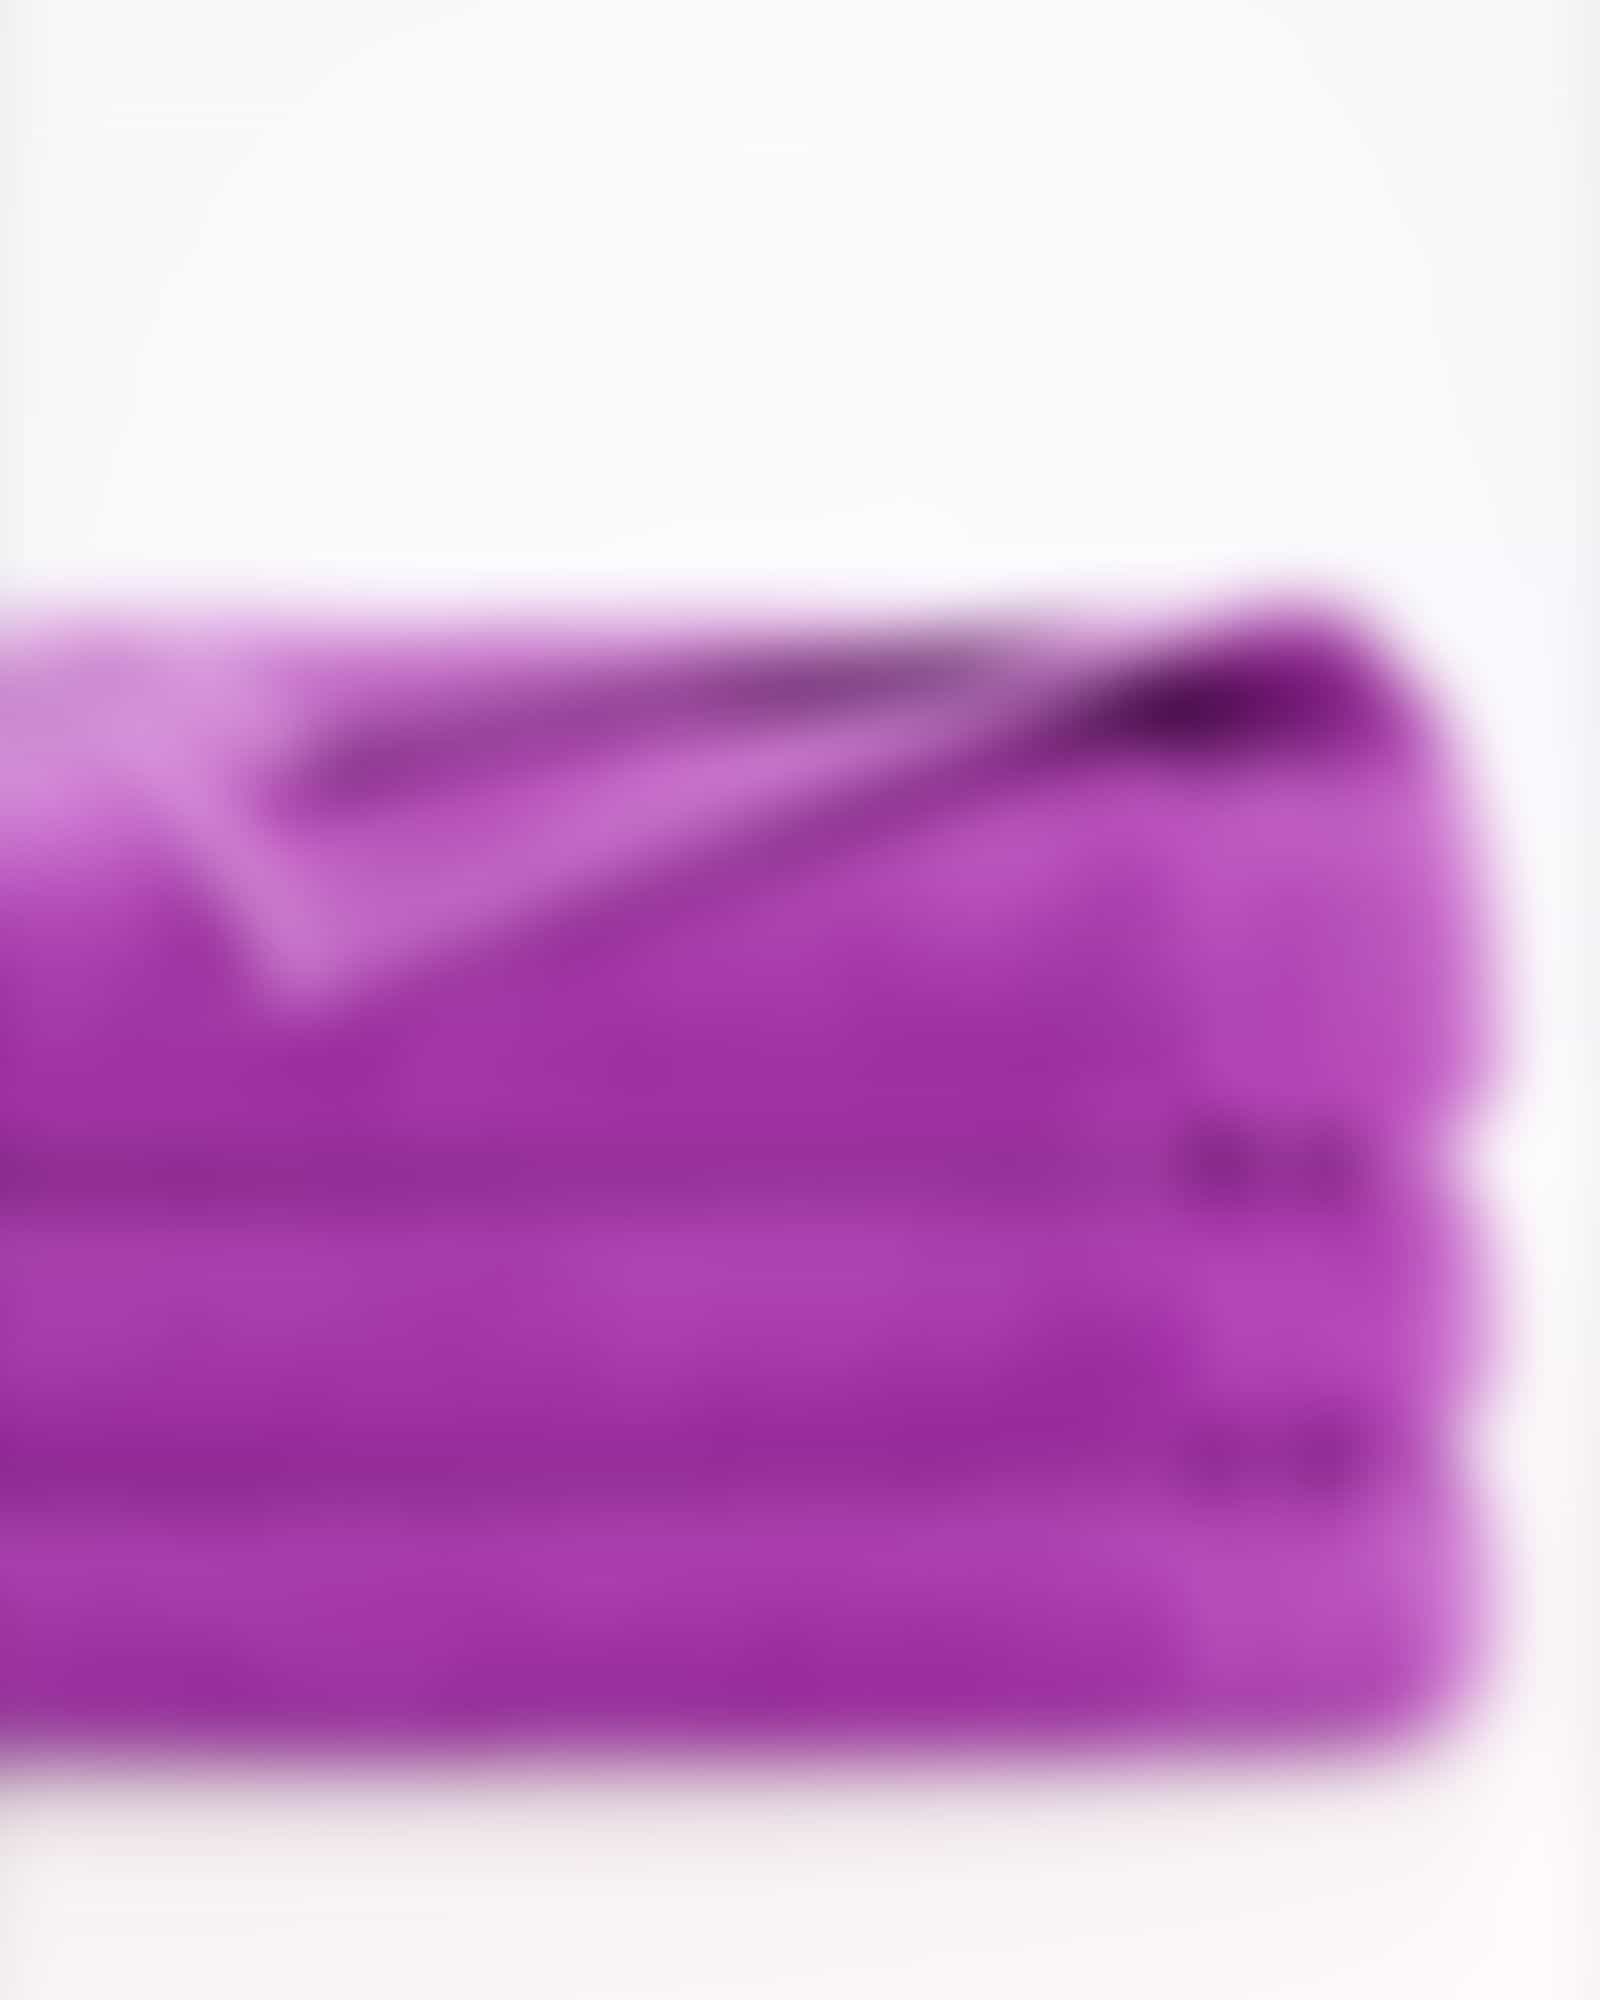 Vossen Handtücher Calypso Feeling - Farbe: lollipop - 8460 - Duschtuch 67x140 cm Detailbild 2